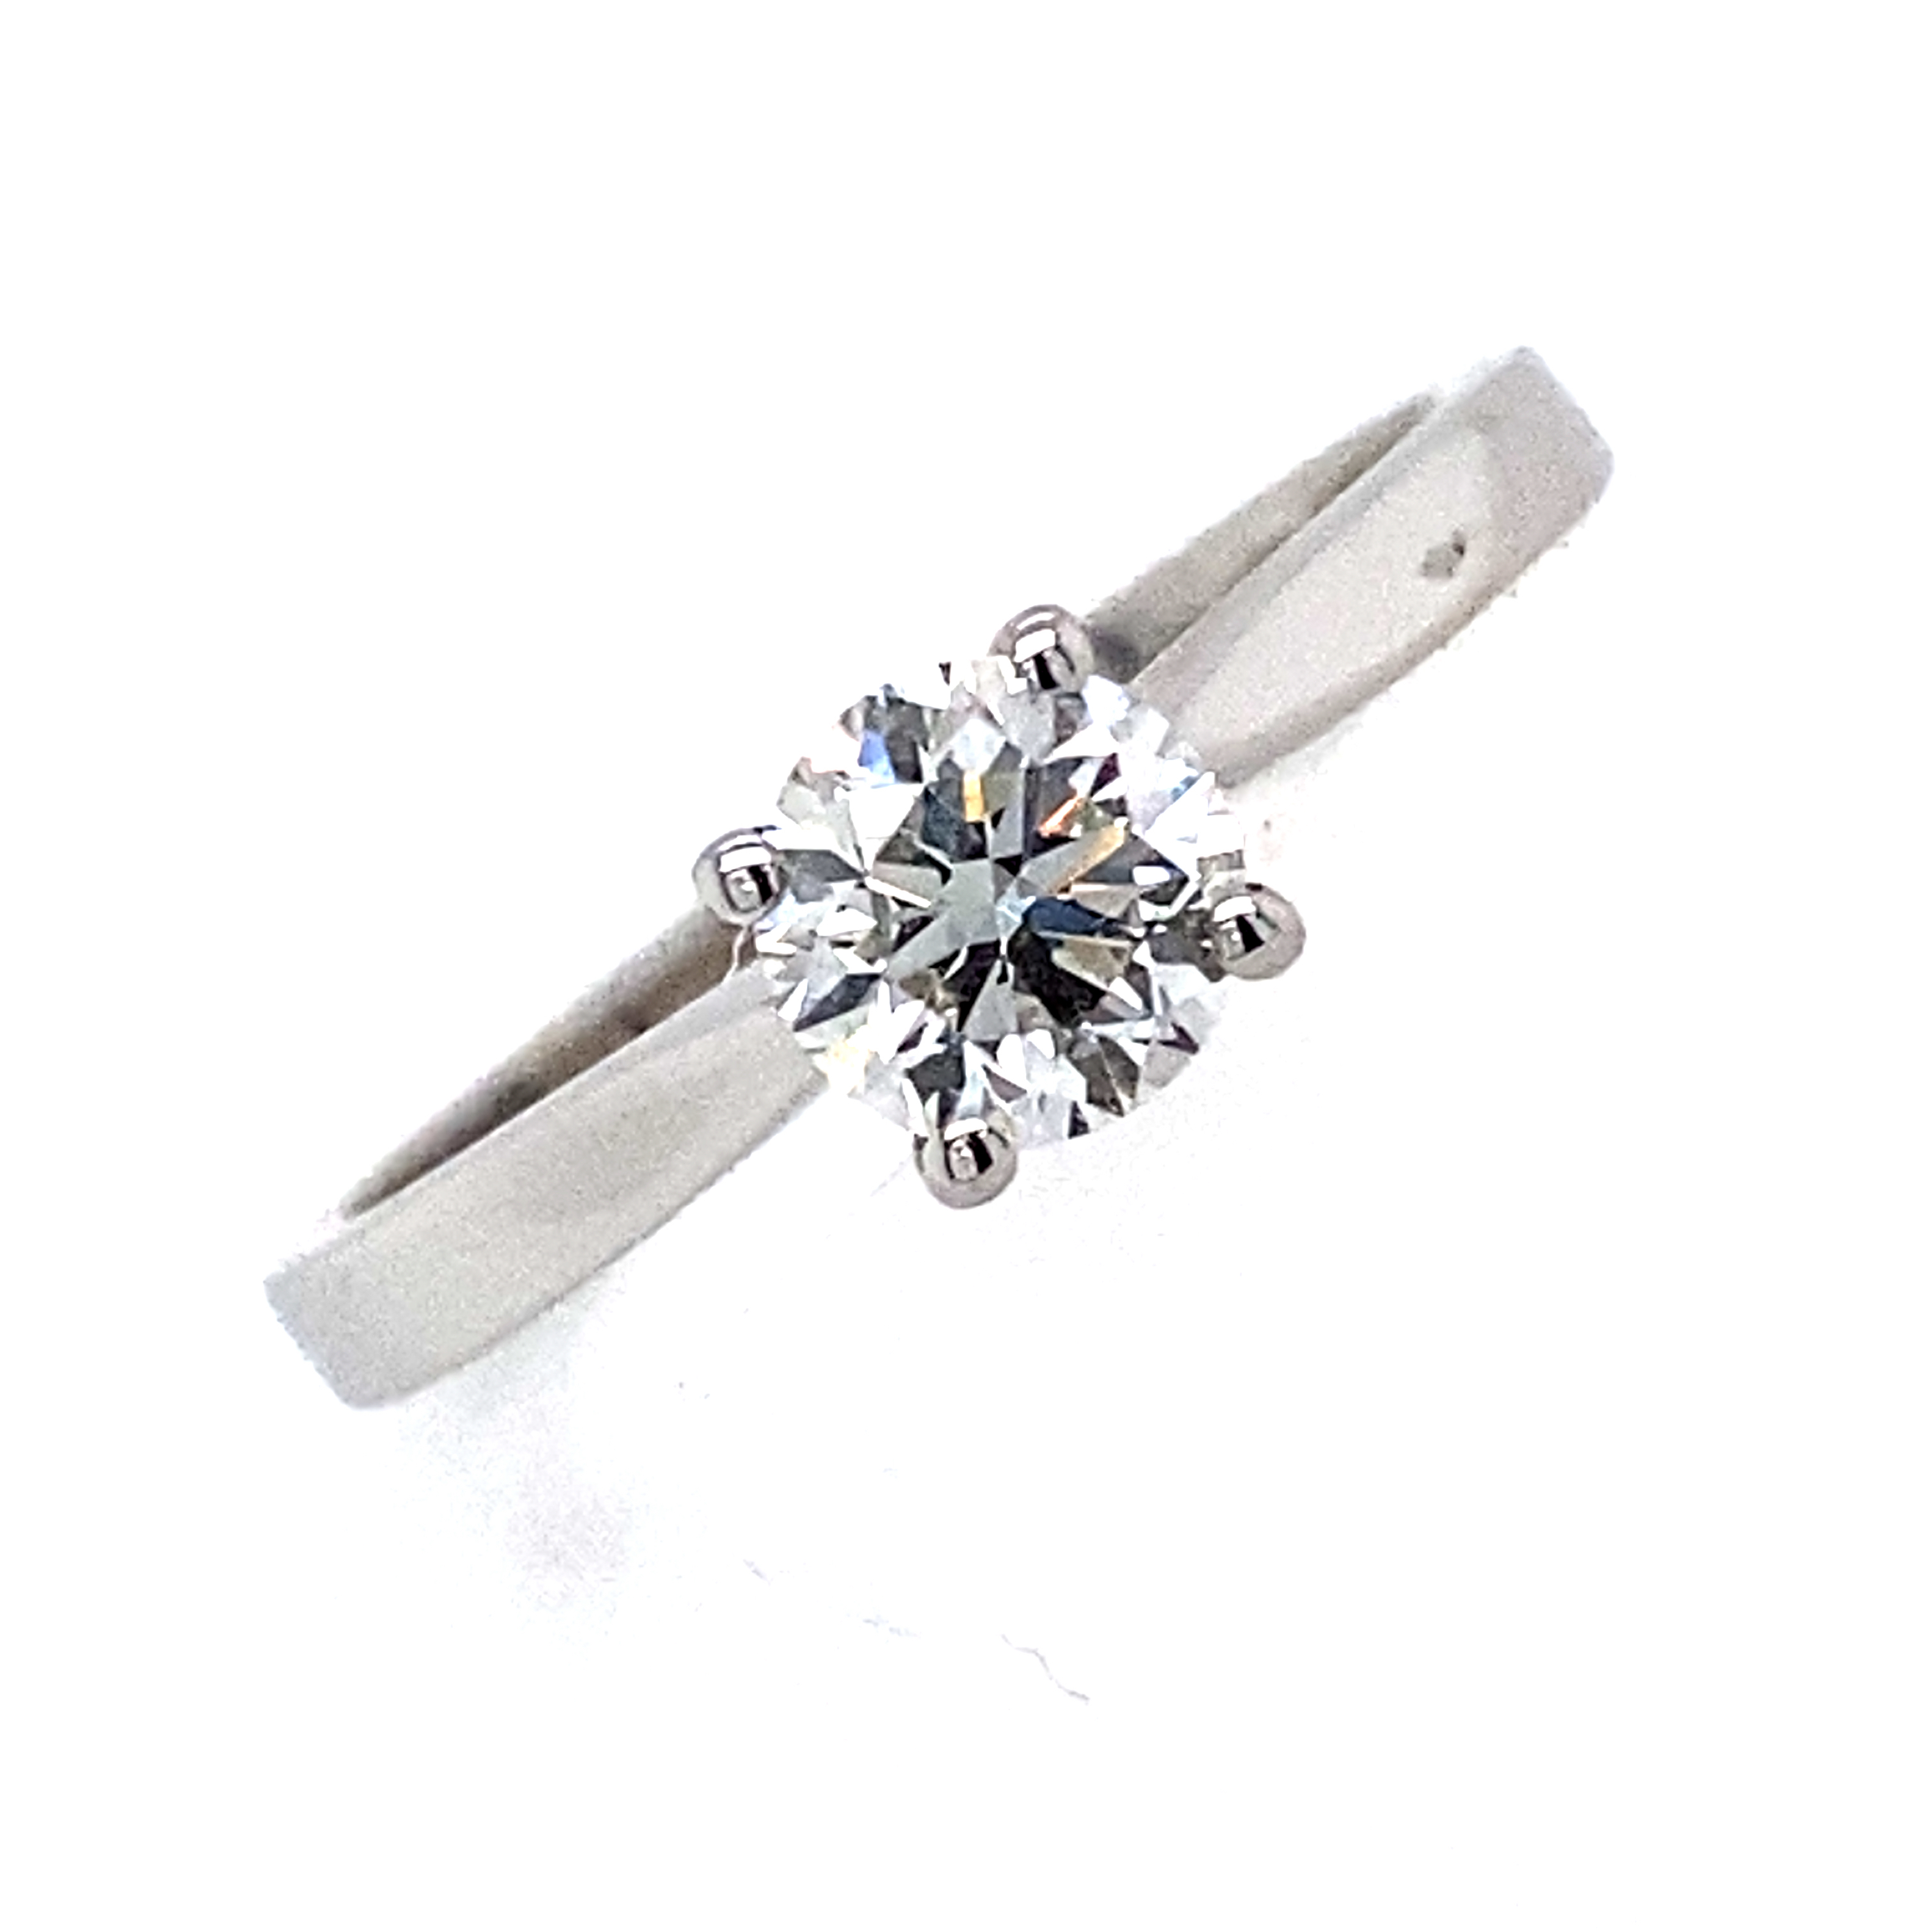 Doris - Platinum and Round Brilliant Diamond Ring - 0.50ct E SI1